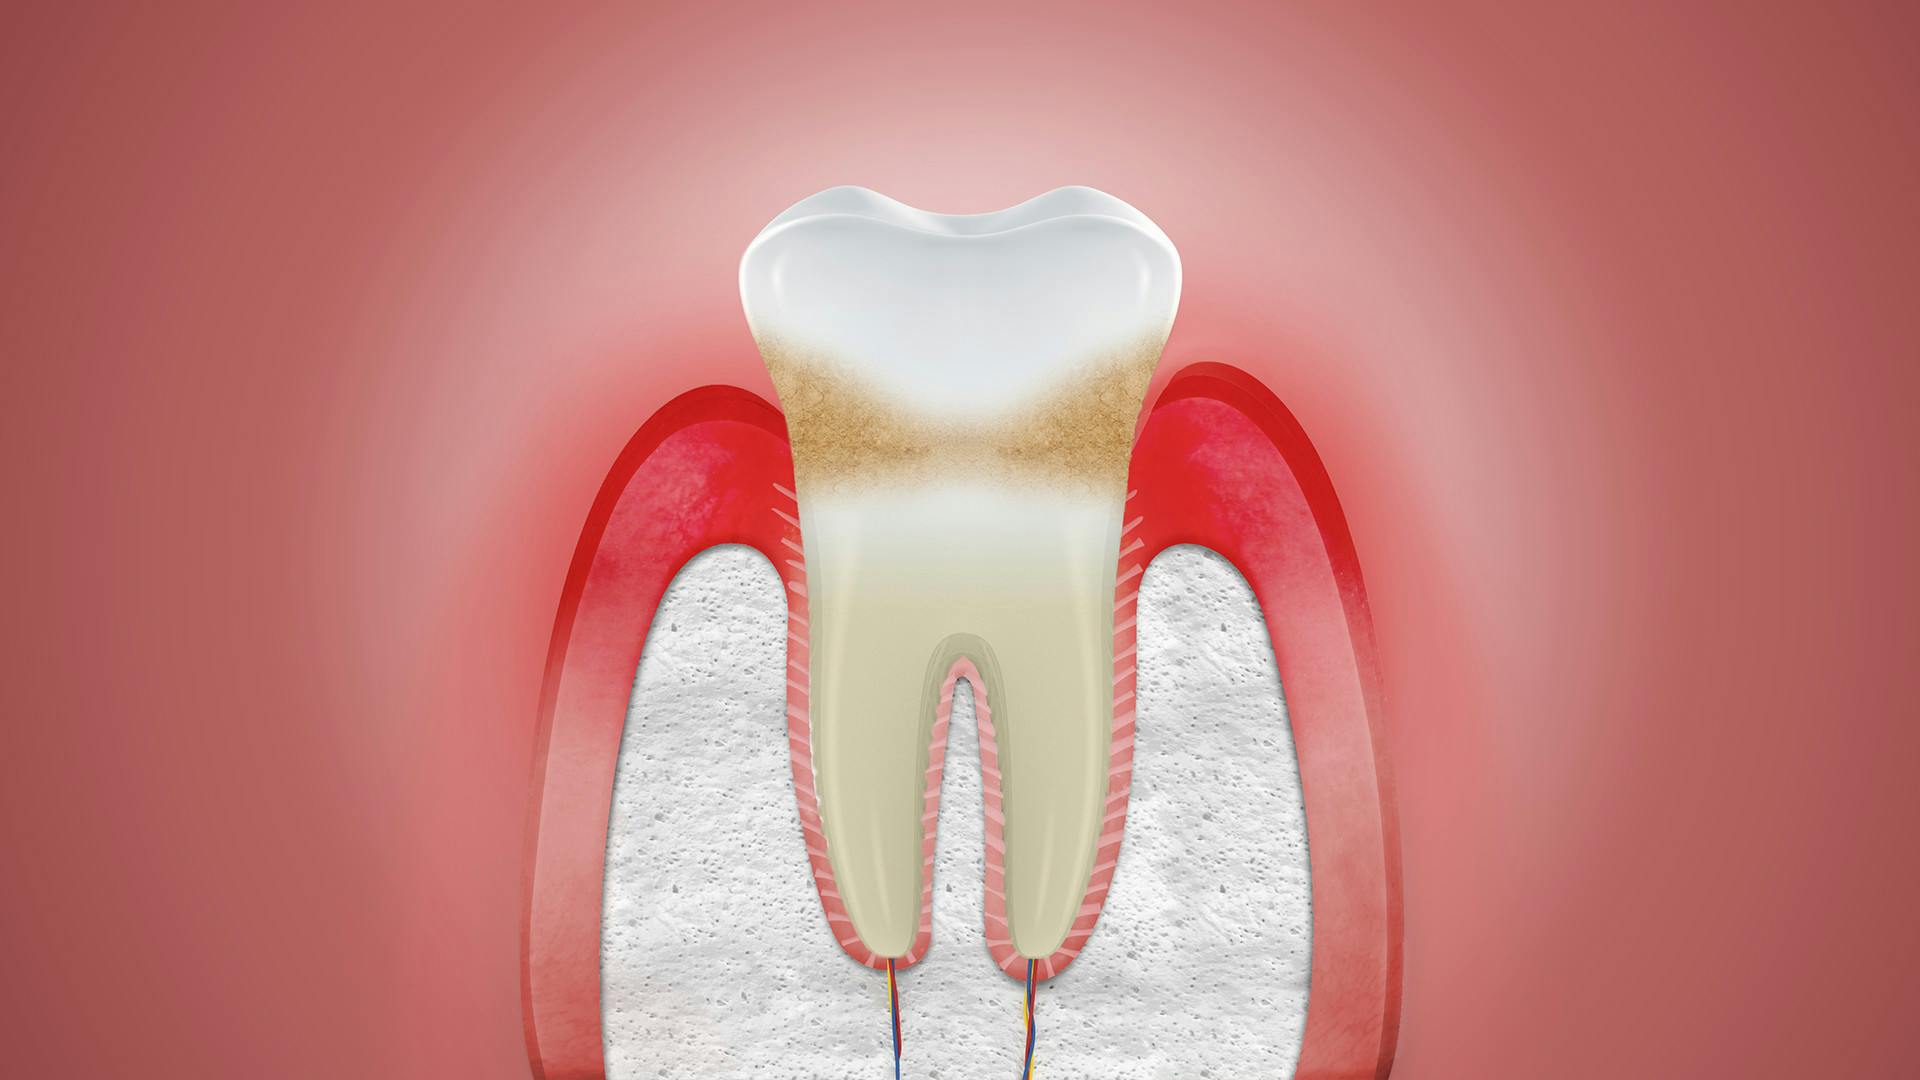 Лечение воспаленных десен - полезные статьи стоматологической сферы в блоге «Гелиоса».